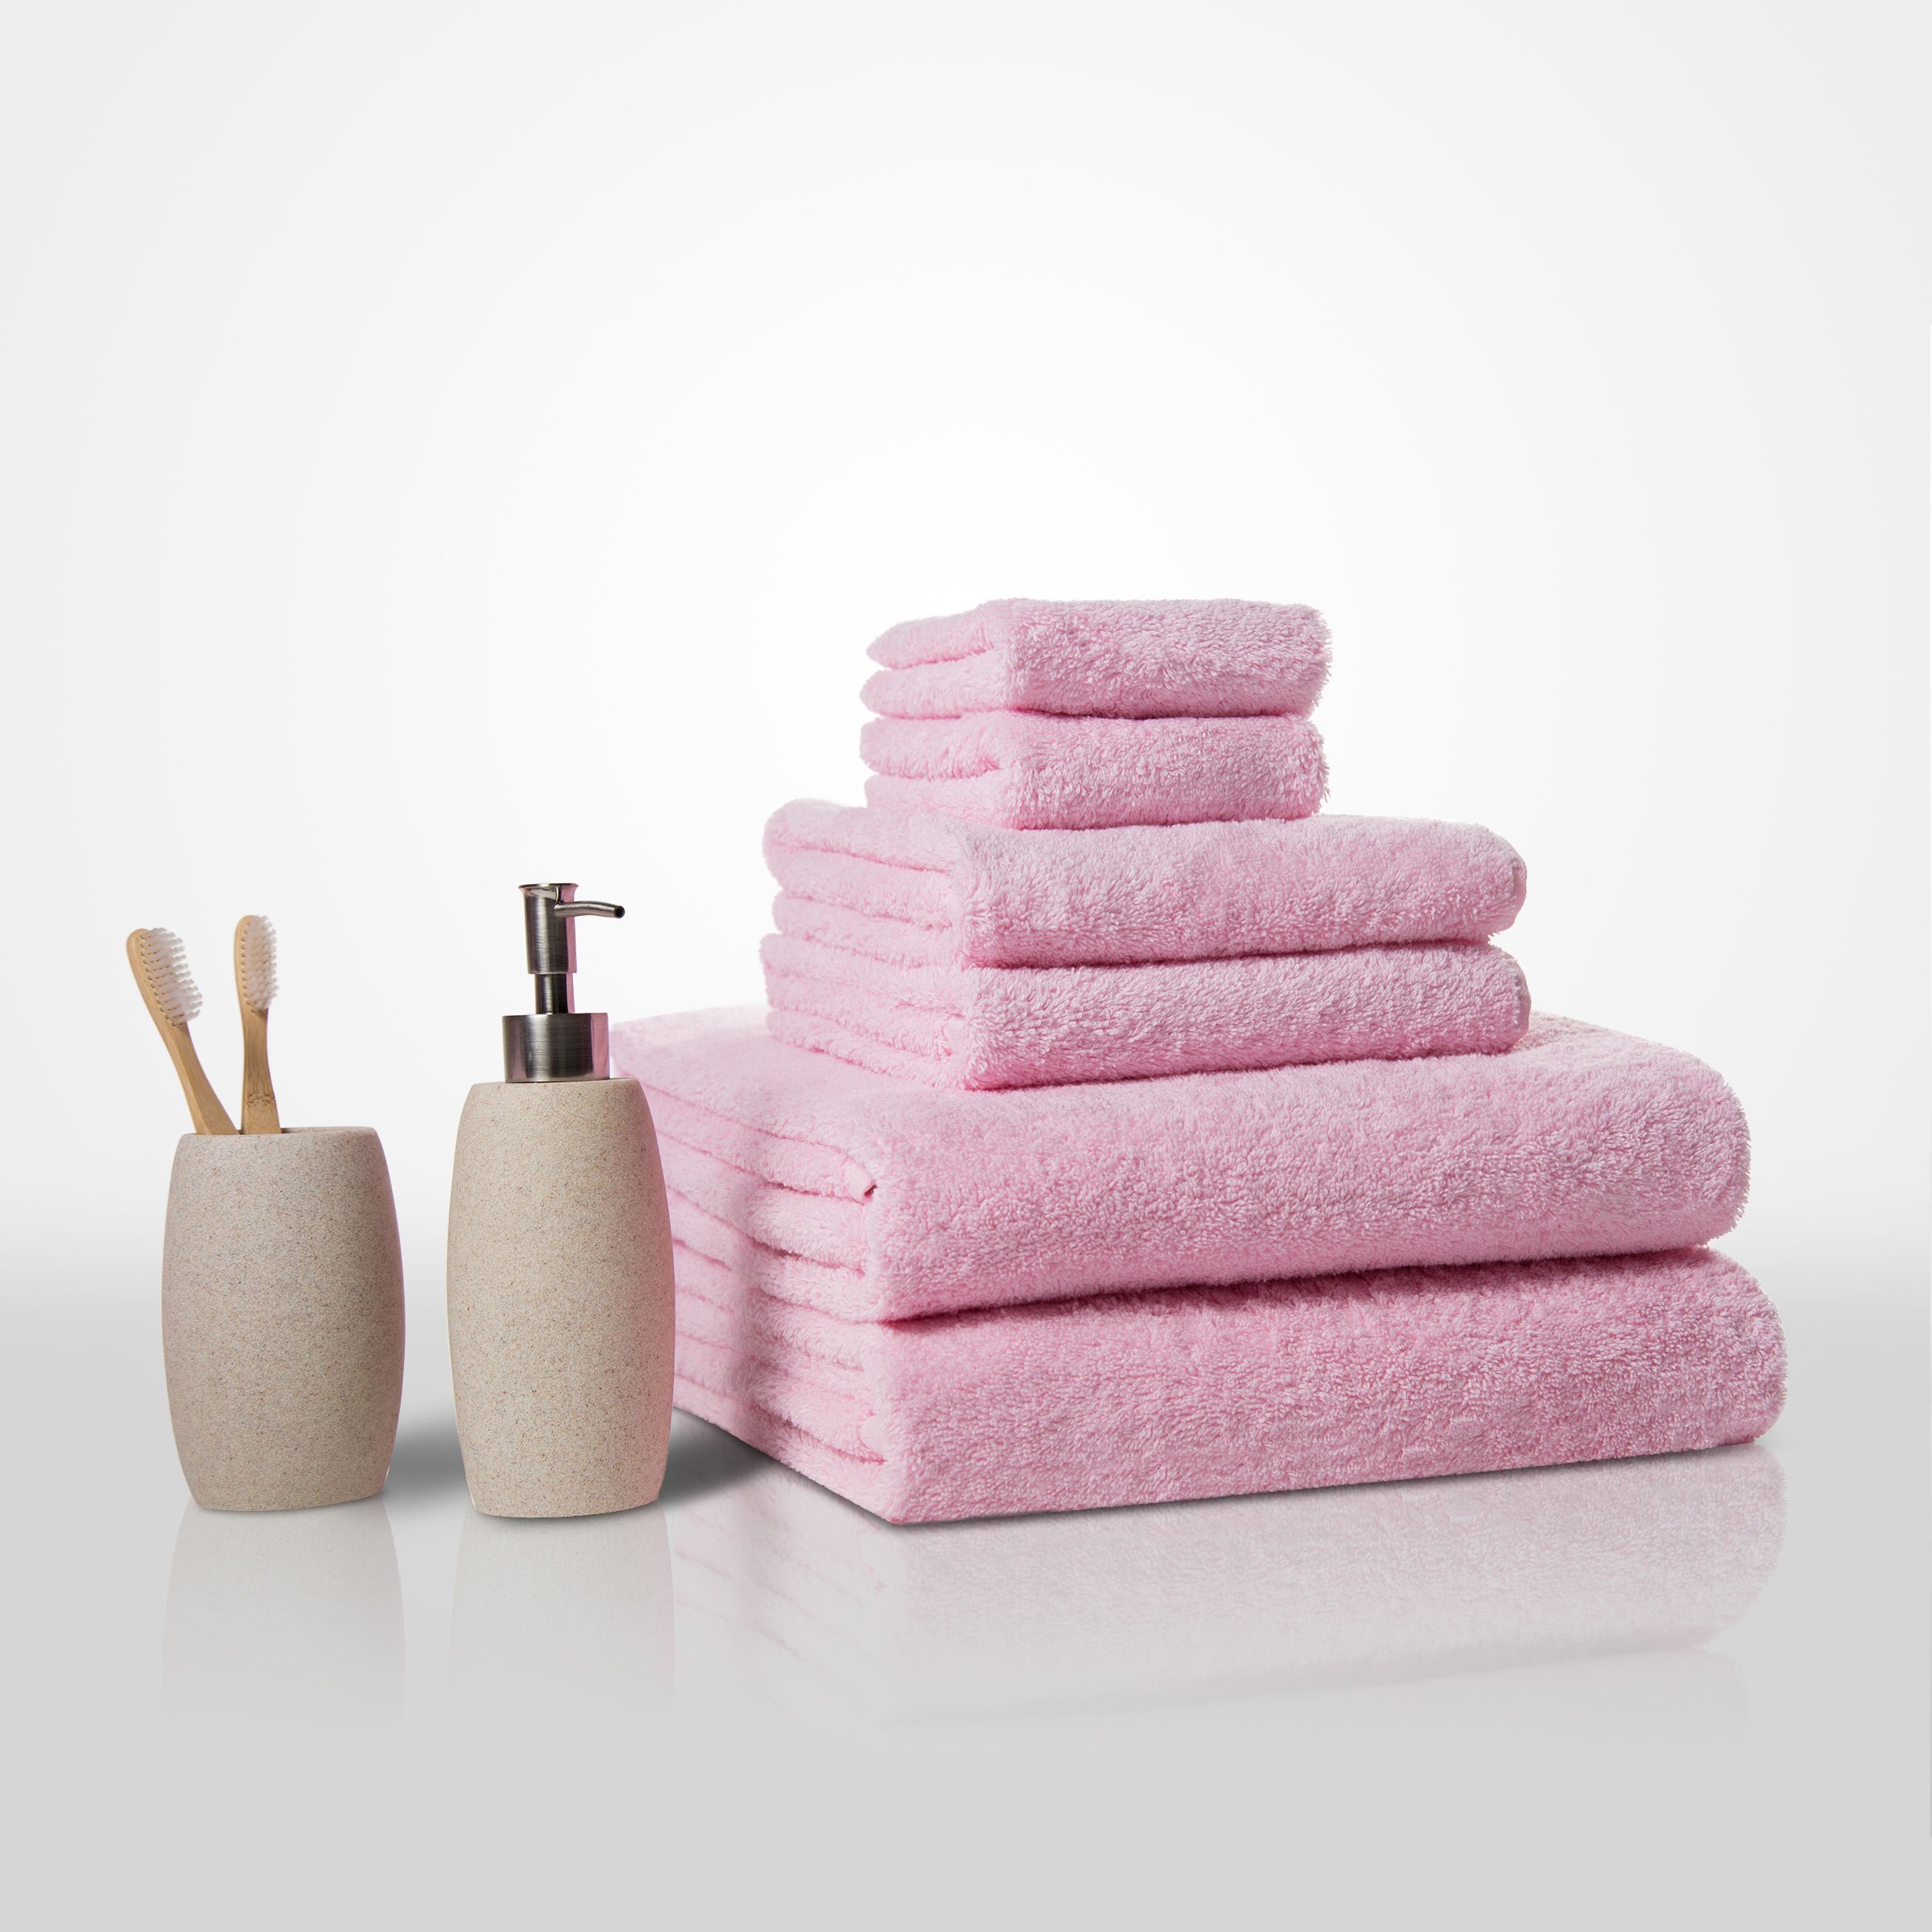 13" x 13" - 100% Turkish Cotton Pink Terry Washcloth  - 12 Pack (Dozen)-Robemart.com